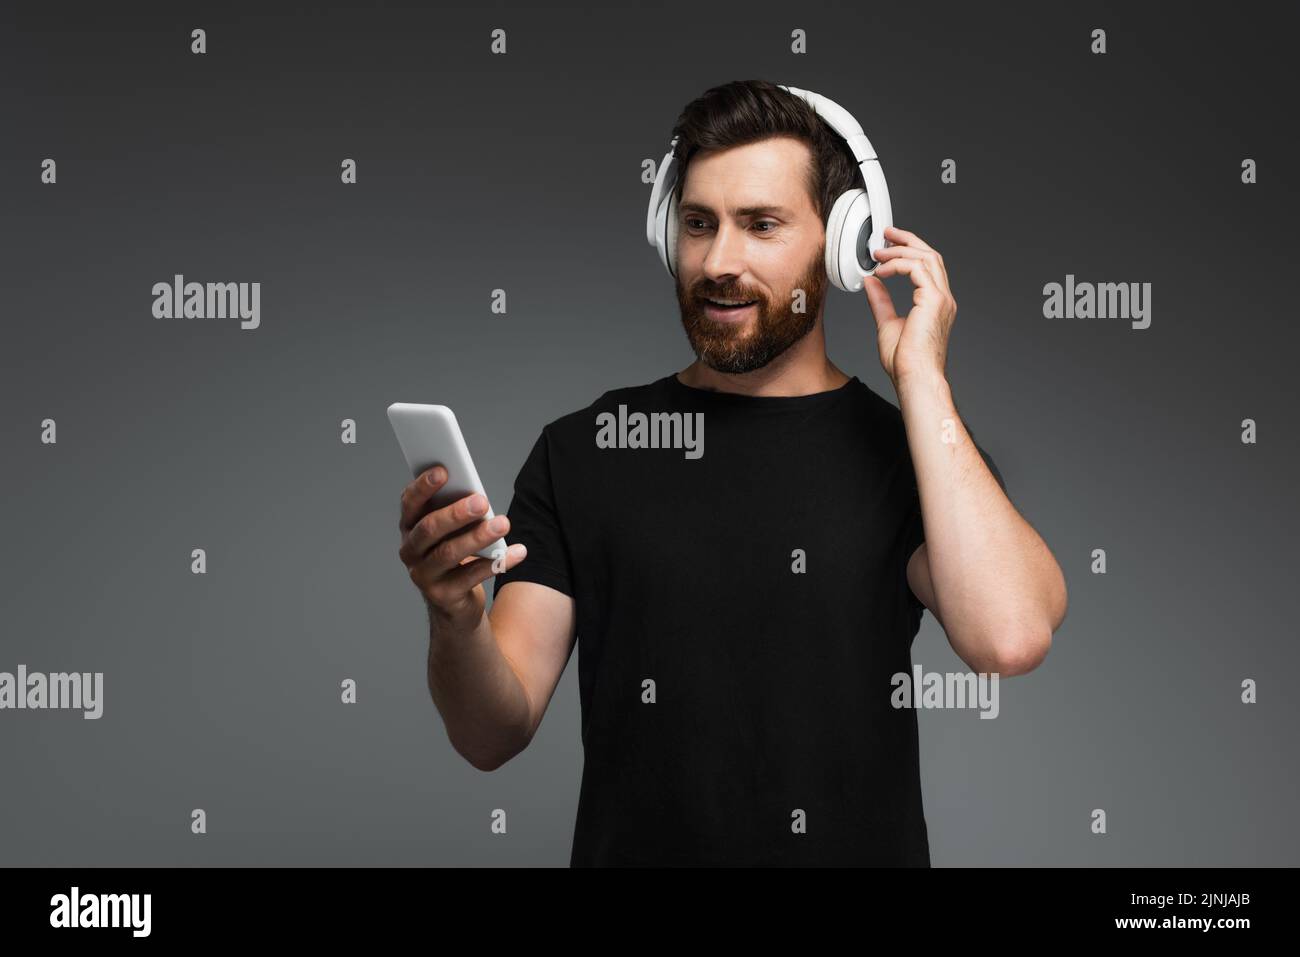 hombre sonriendo con auriculares inalámbricos escuchando música y utilizando un smartphone aislado sobre una imagen de stock gris Foto de stock